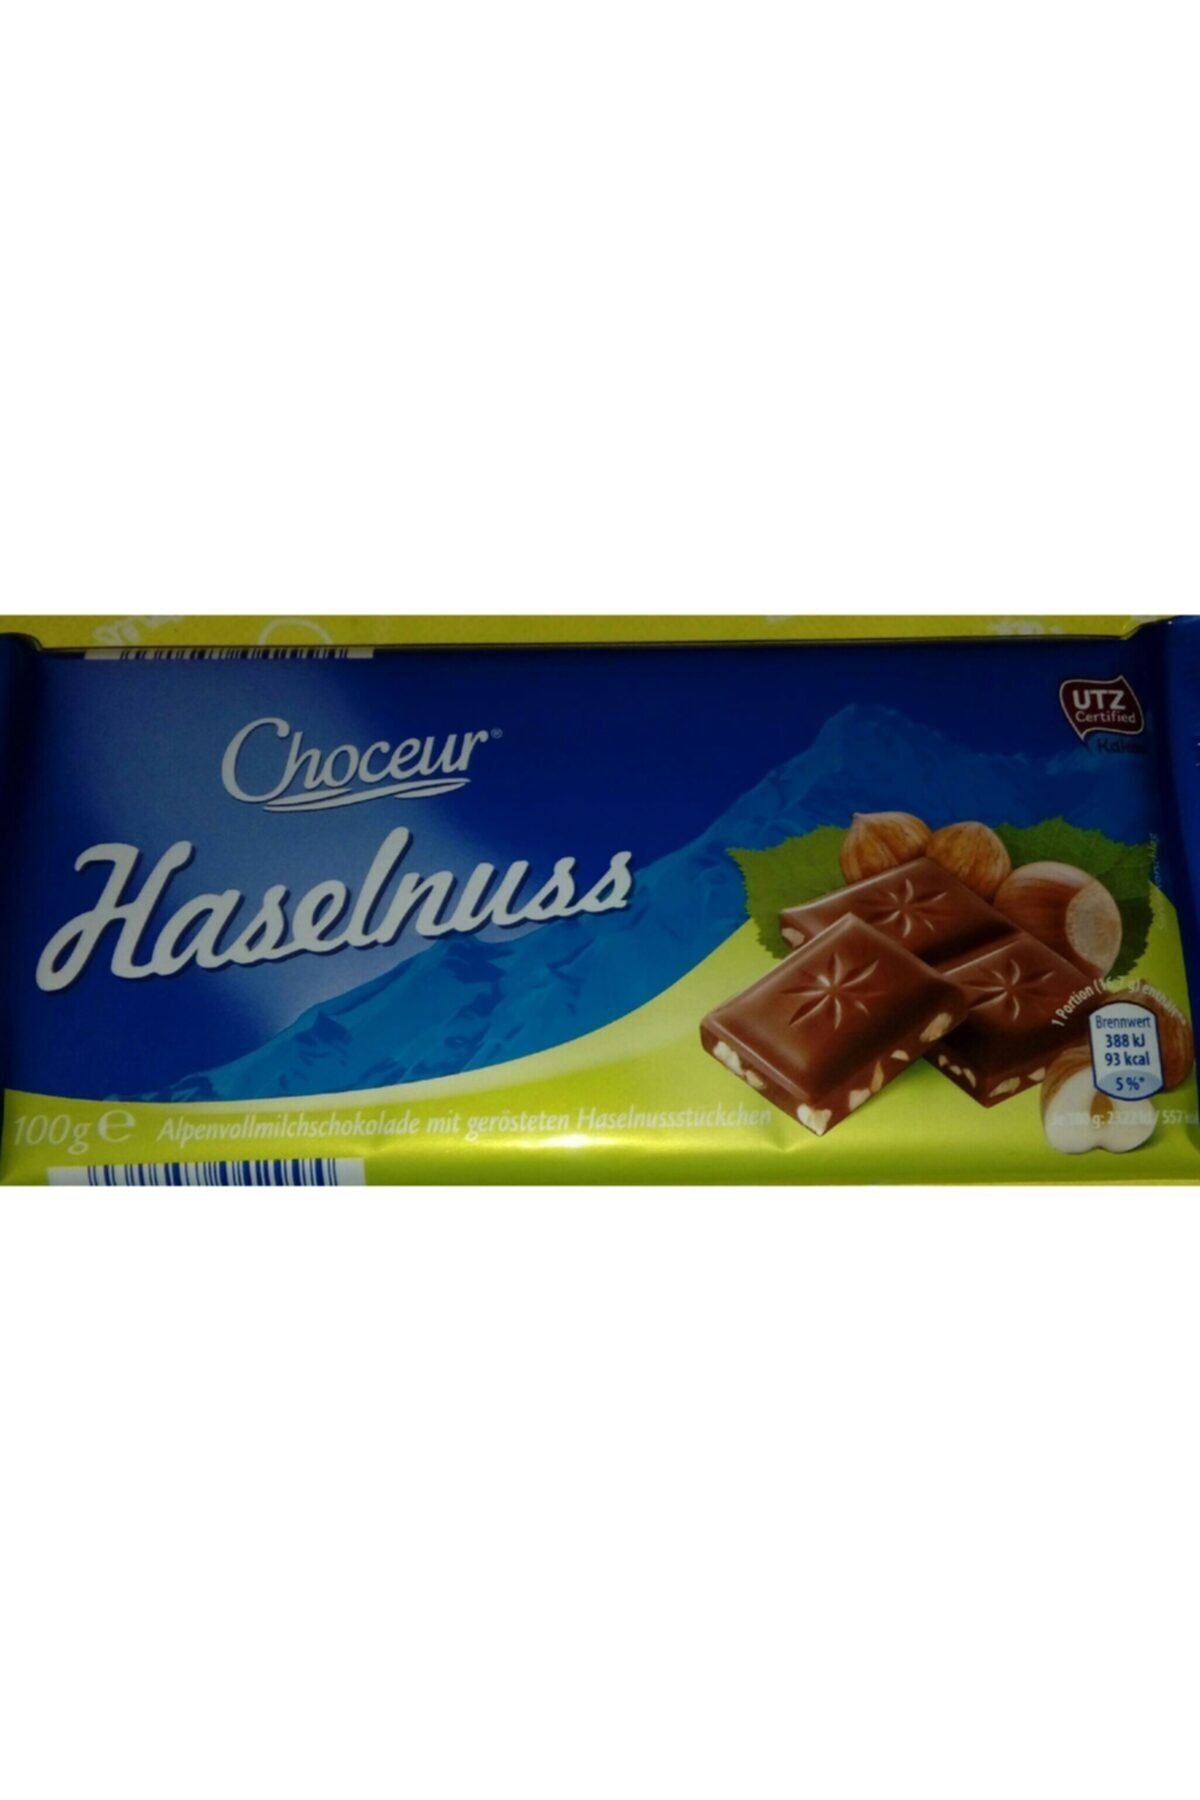 Choceur Haselnuss Parça Fındıklı Orijinal Alman Çikolatası Fiyatı